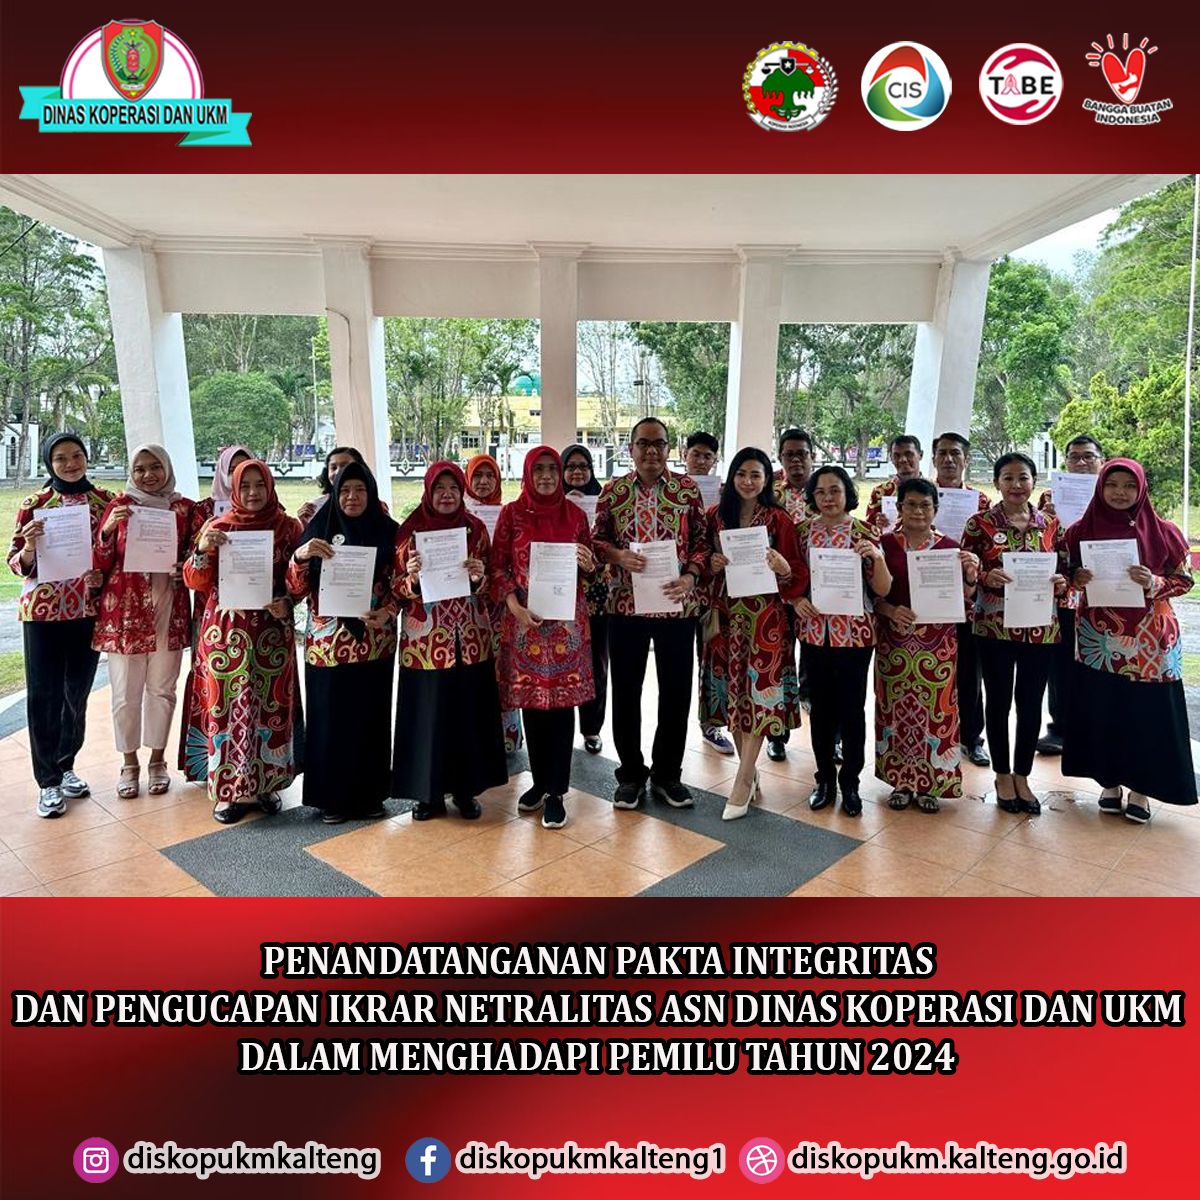 Penandatanganan Pakta Integritas dan Pengucapan Ikrar Netralitas ASN Dinas Koperasi dan UKM Provinsi Kalimantan Tengah